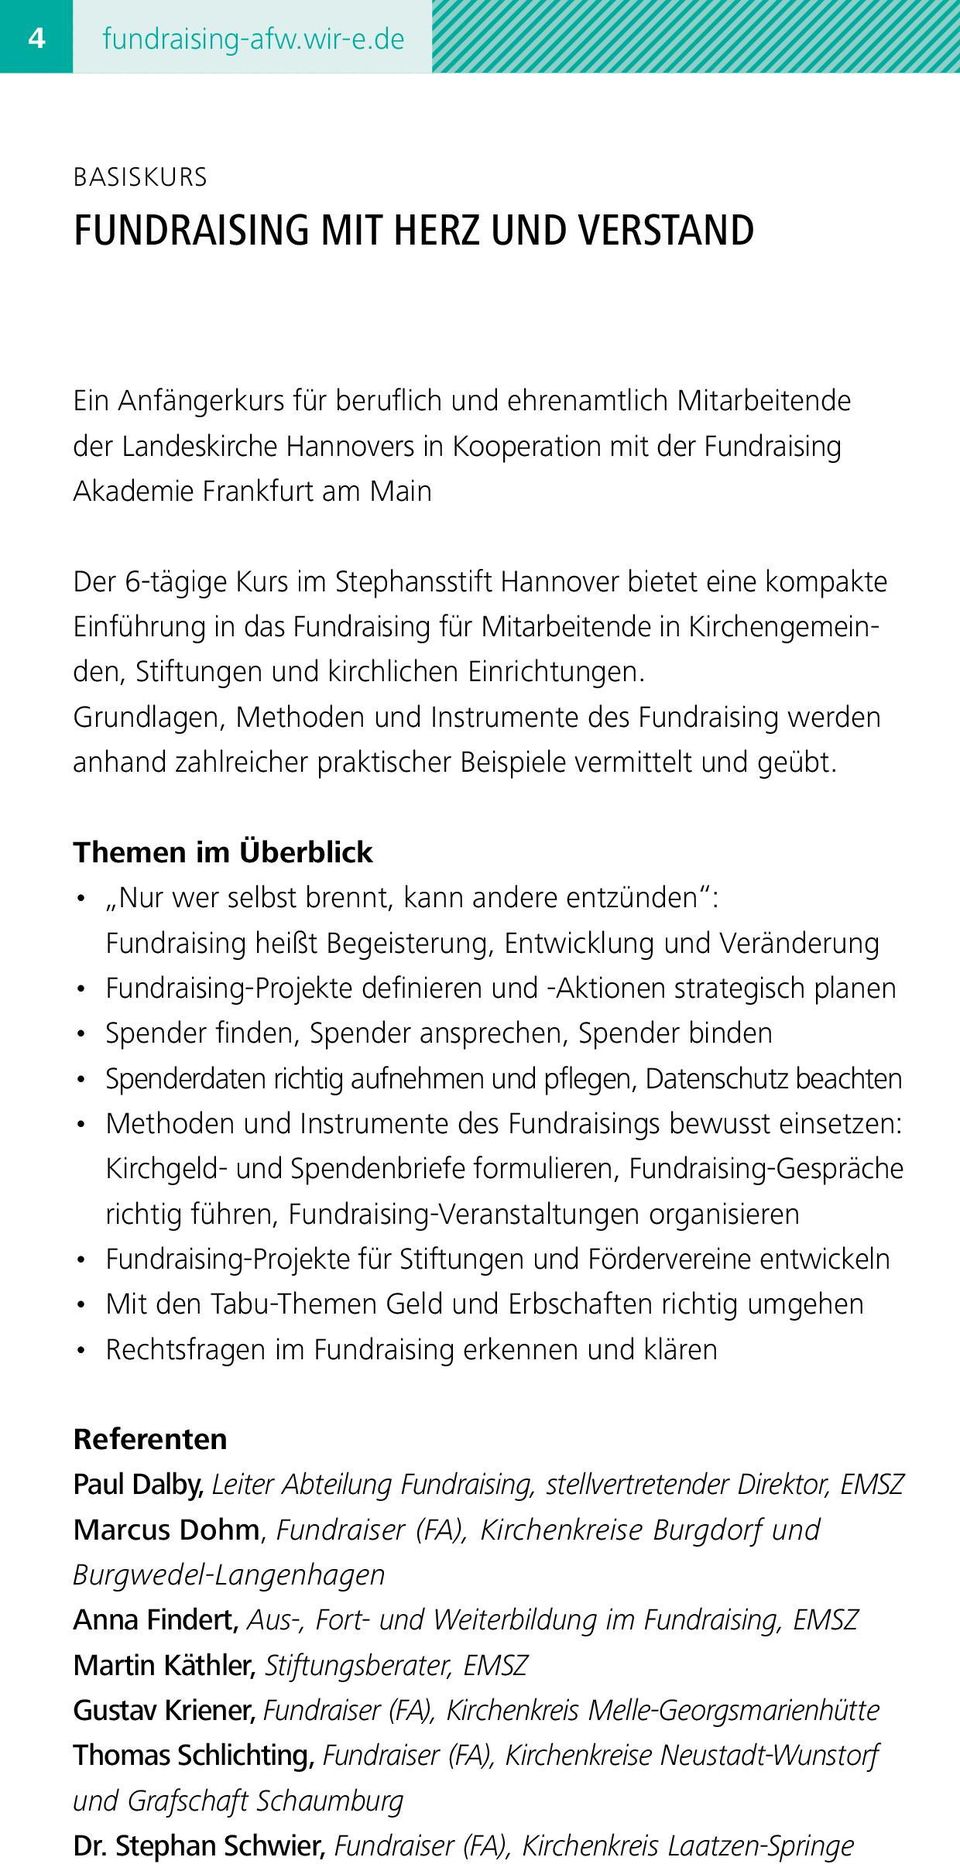 Der 6-tägige Kurs im Stephansstift Hannover bietet eine kompakte Einführung in das Fundraising für Mitarbeitende in Kirchengemeinden, Stiftungen und kirchlichen Einrichtungen.